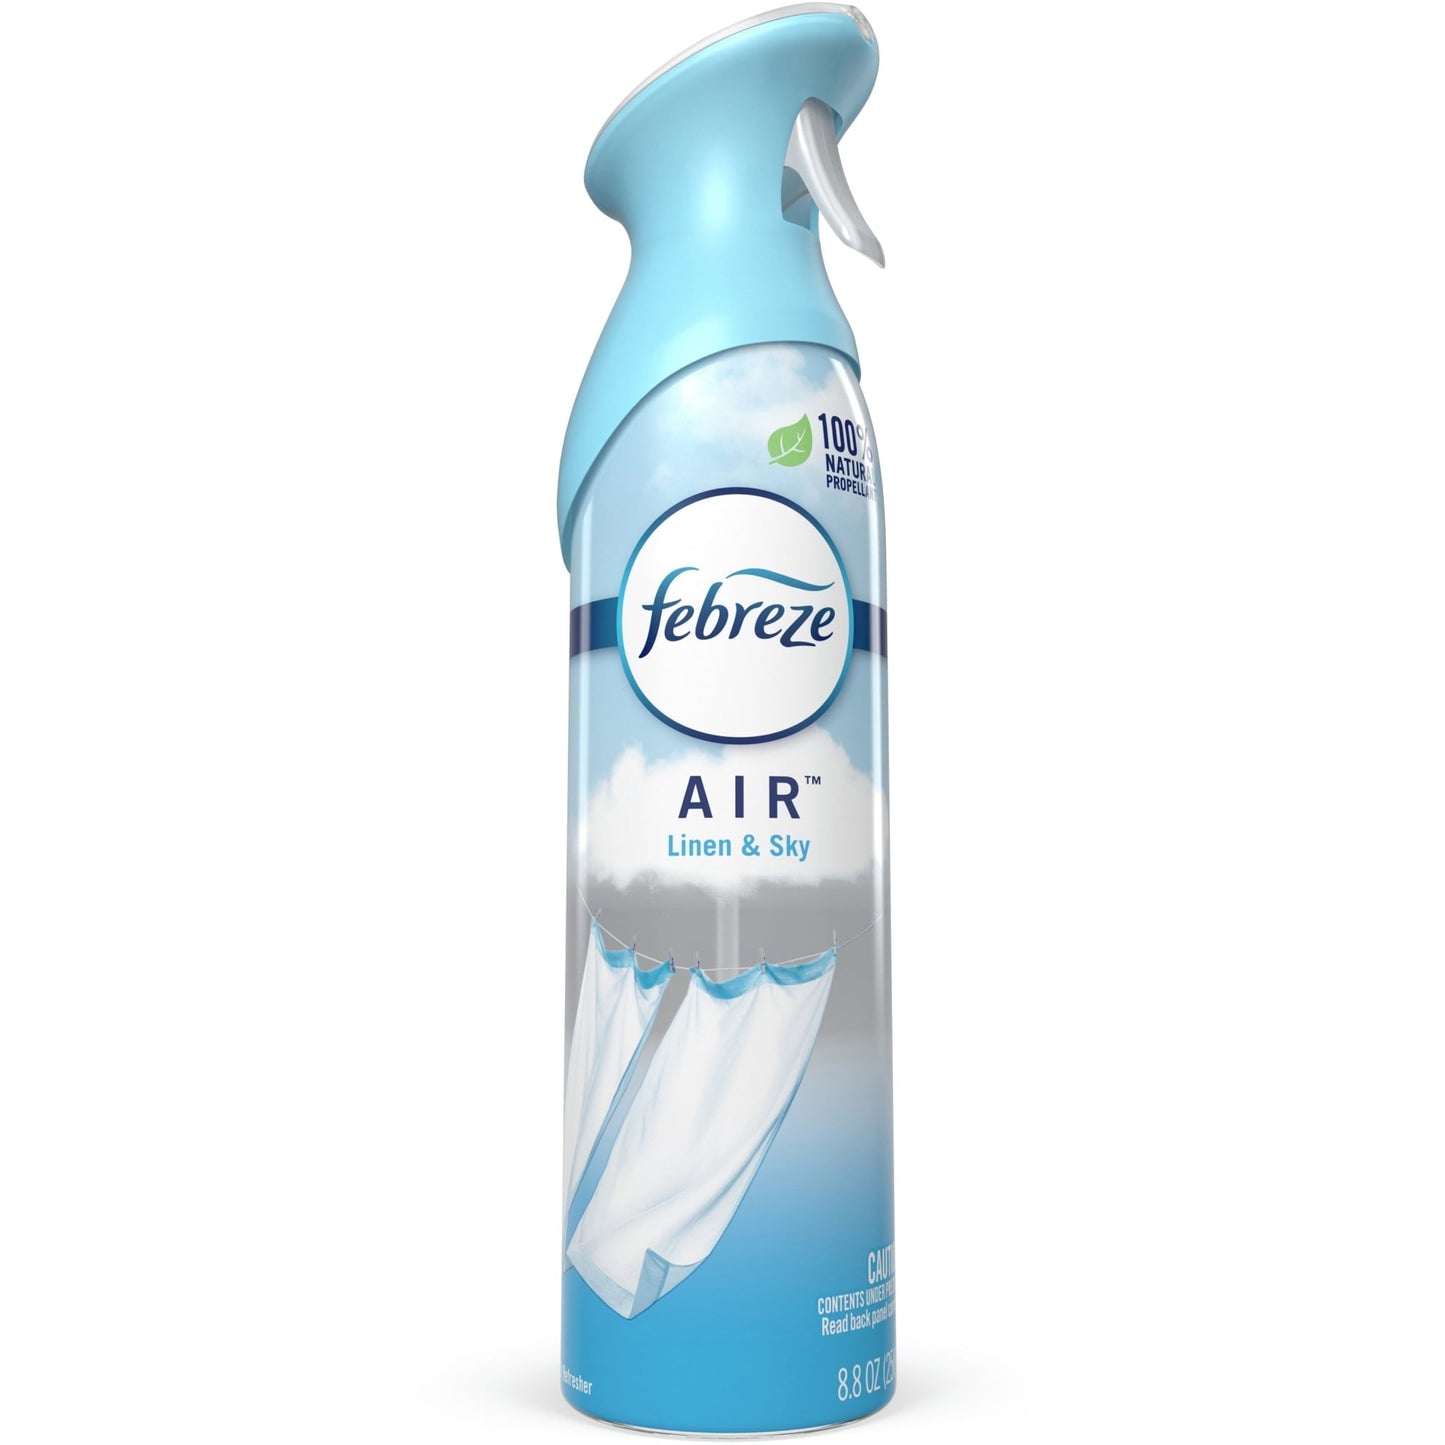 Febreze Odor-Fighting Air Freshener Linen & Sky, 8.8 oz